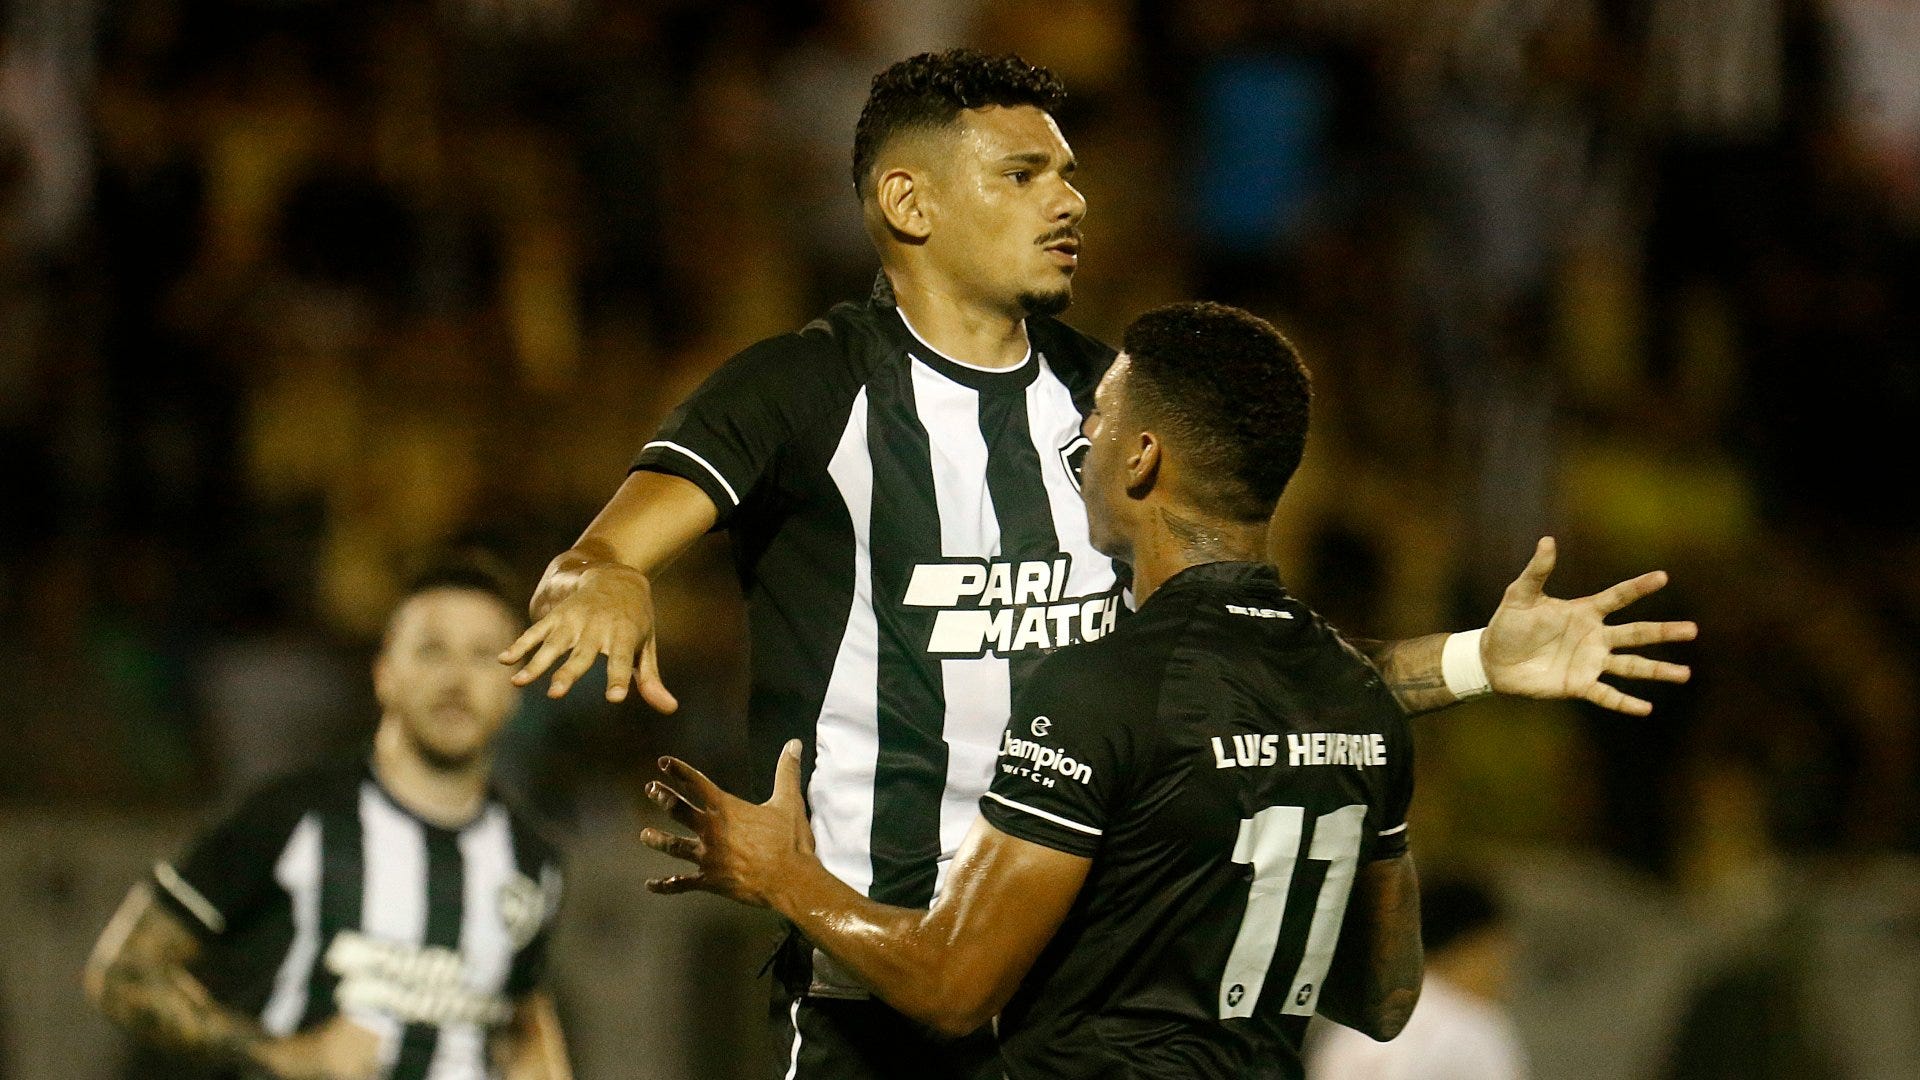 Copa do Brasil: Assista ao vivo e de graça ao jogo América-MG x Botafogo